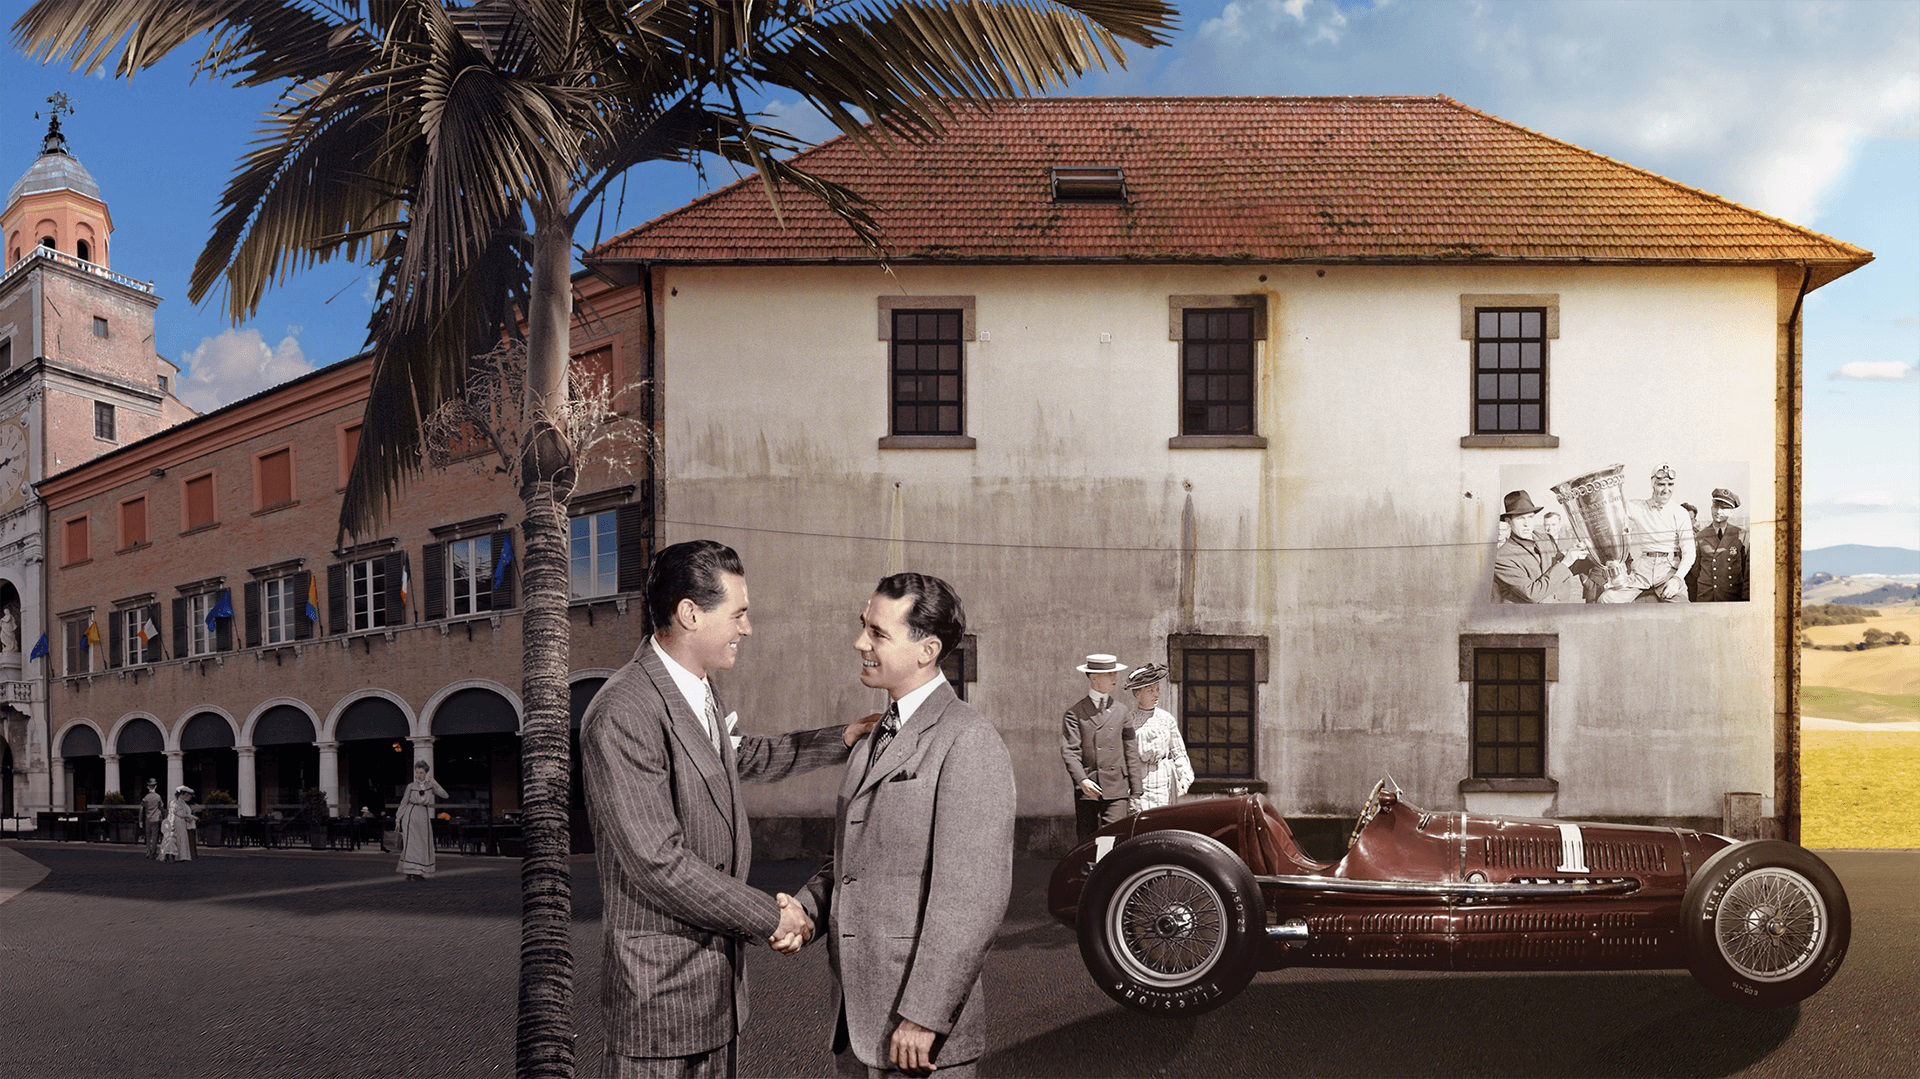 Storia di Maserati - 1930: Adolfo Orsi, imprenditore di Modena, compra il marchio Maserati